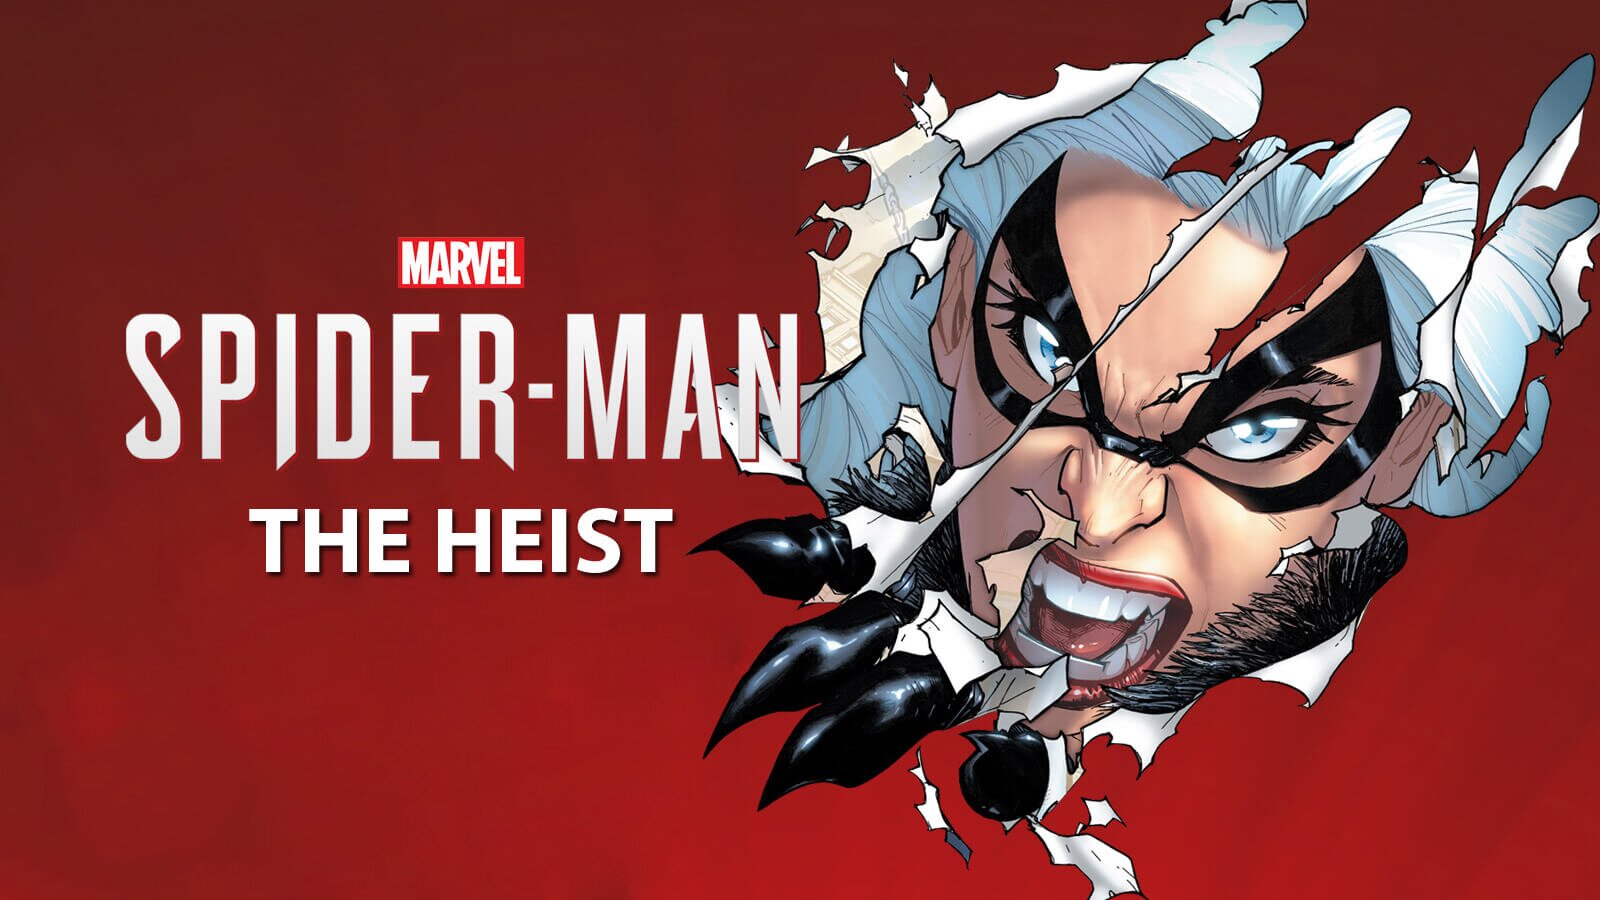 Marvel’s Spider-Man: The Heist